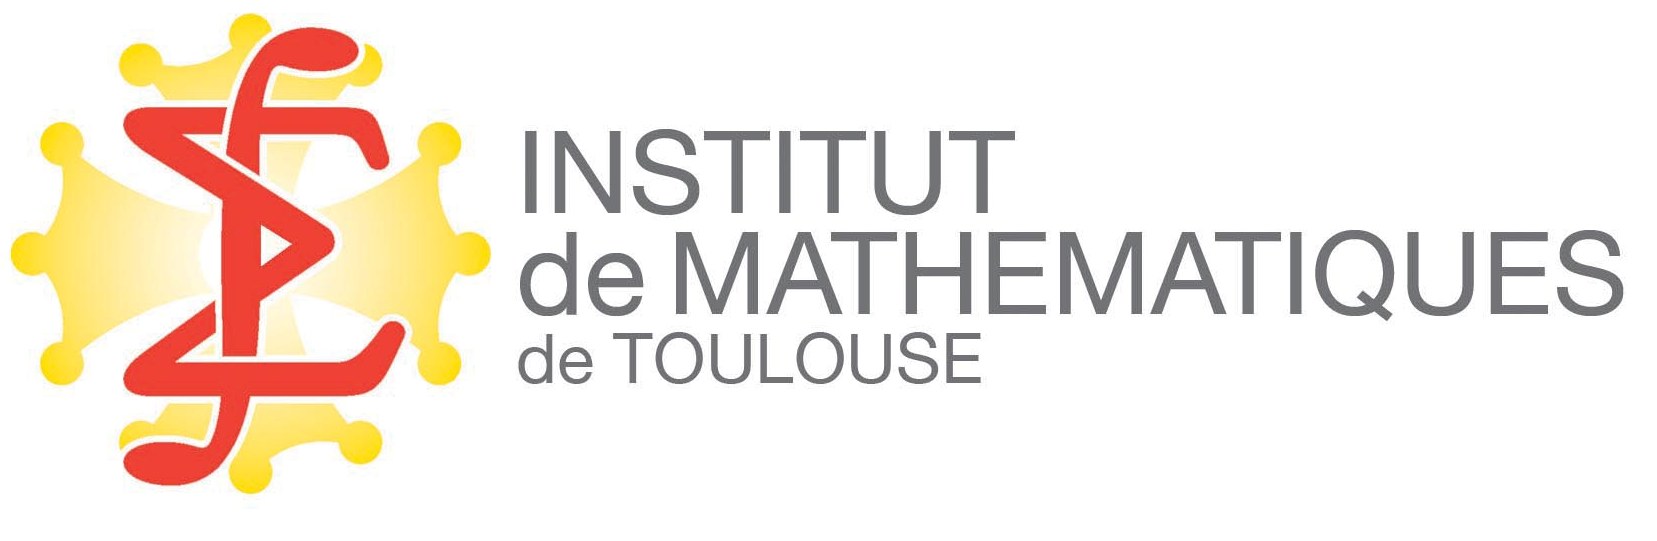 Institut de Mathématiques de Toulouse